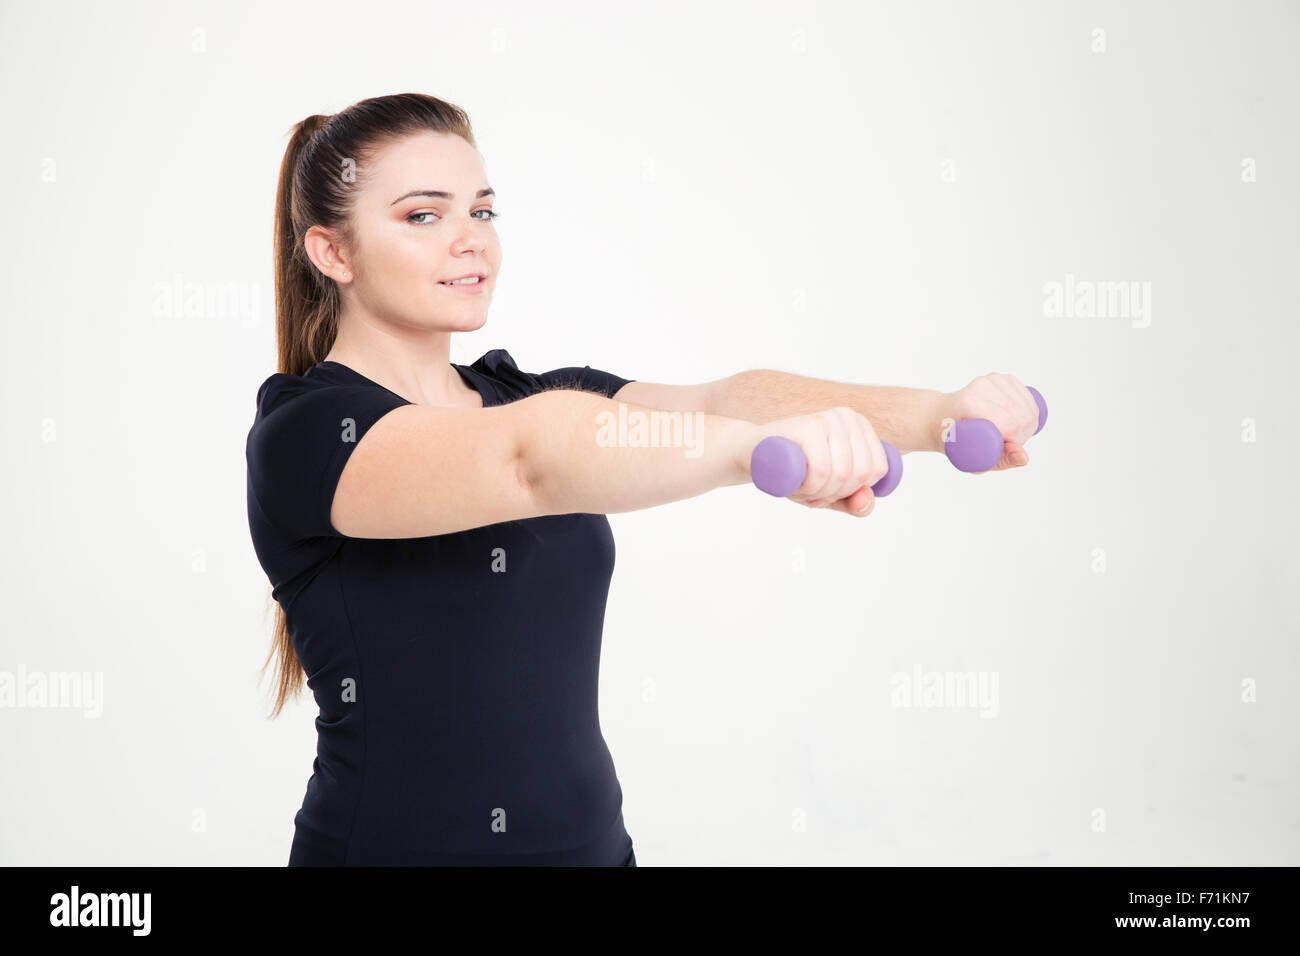 Ritratto di un sorridente donna grassa allenamento con i pesi isolato su uno sfondo bianco Foto Stock